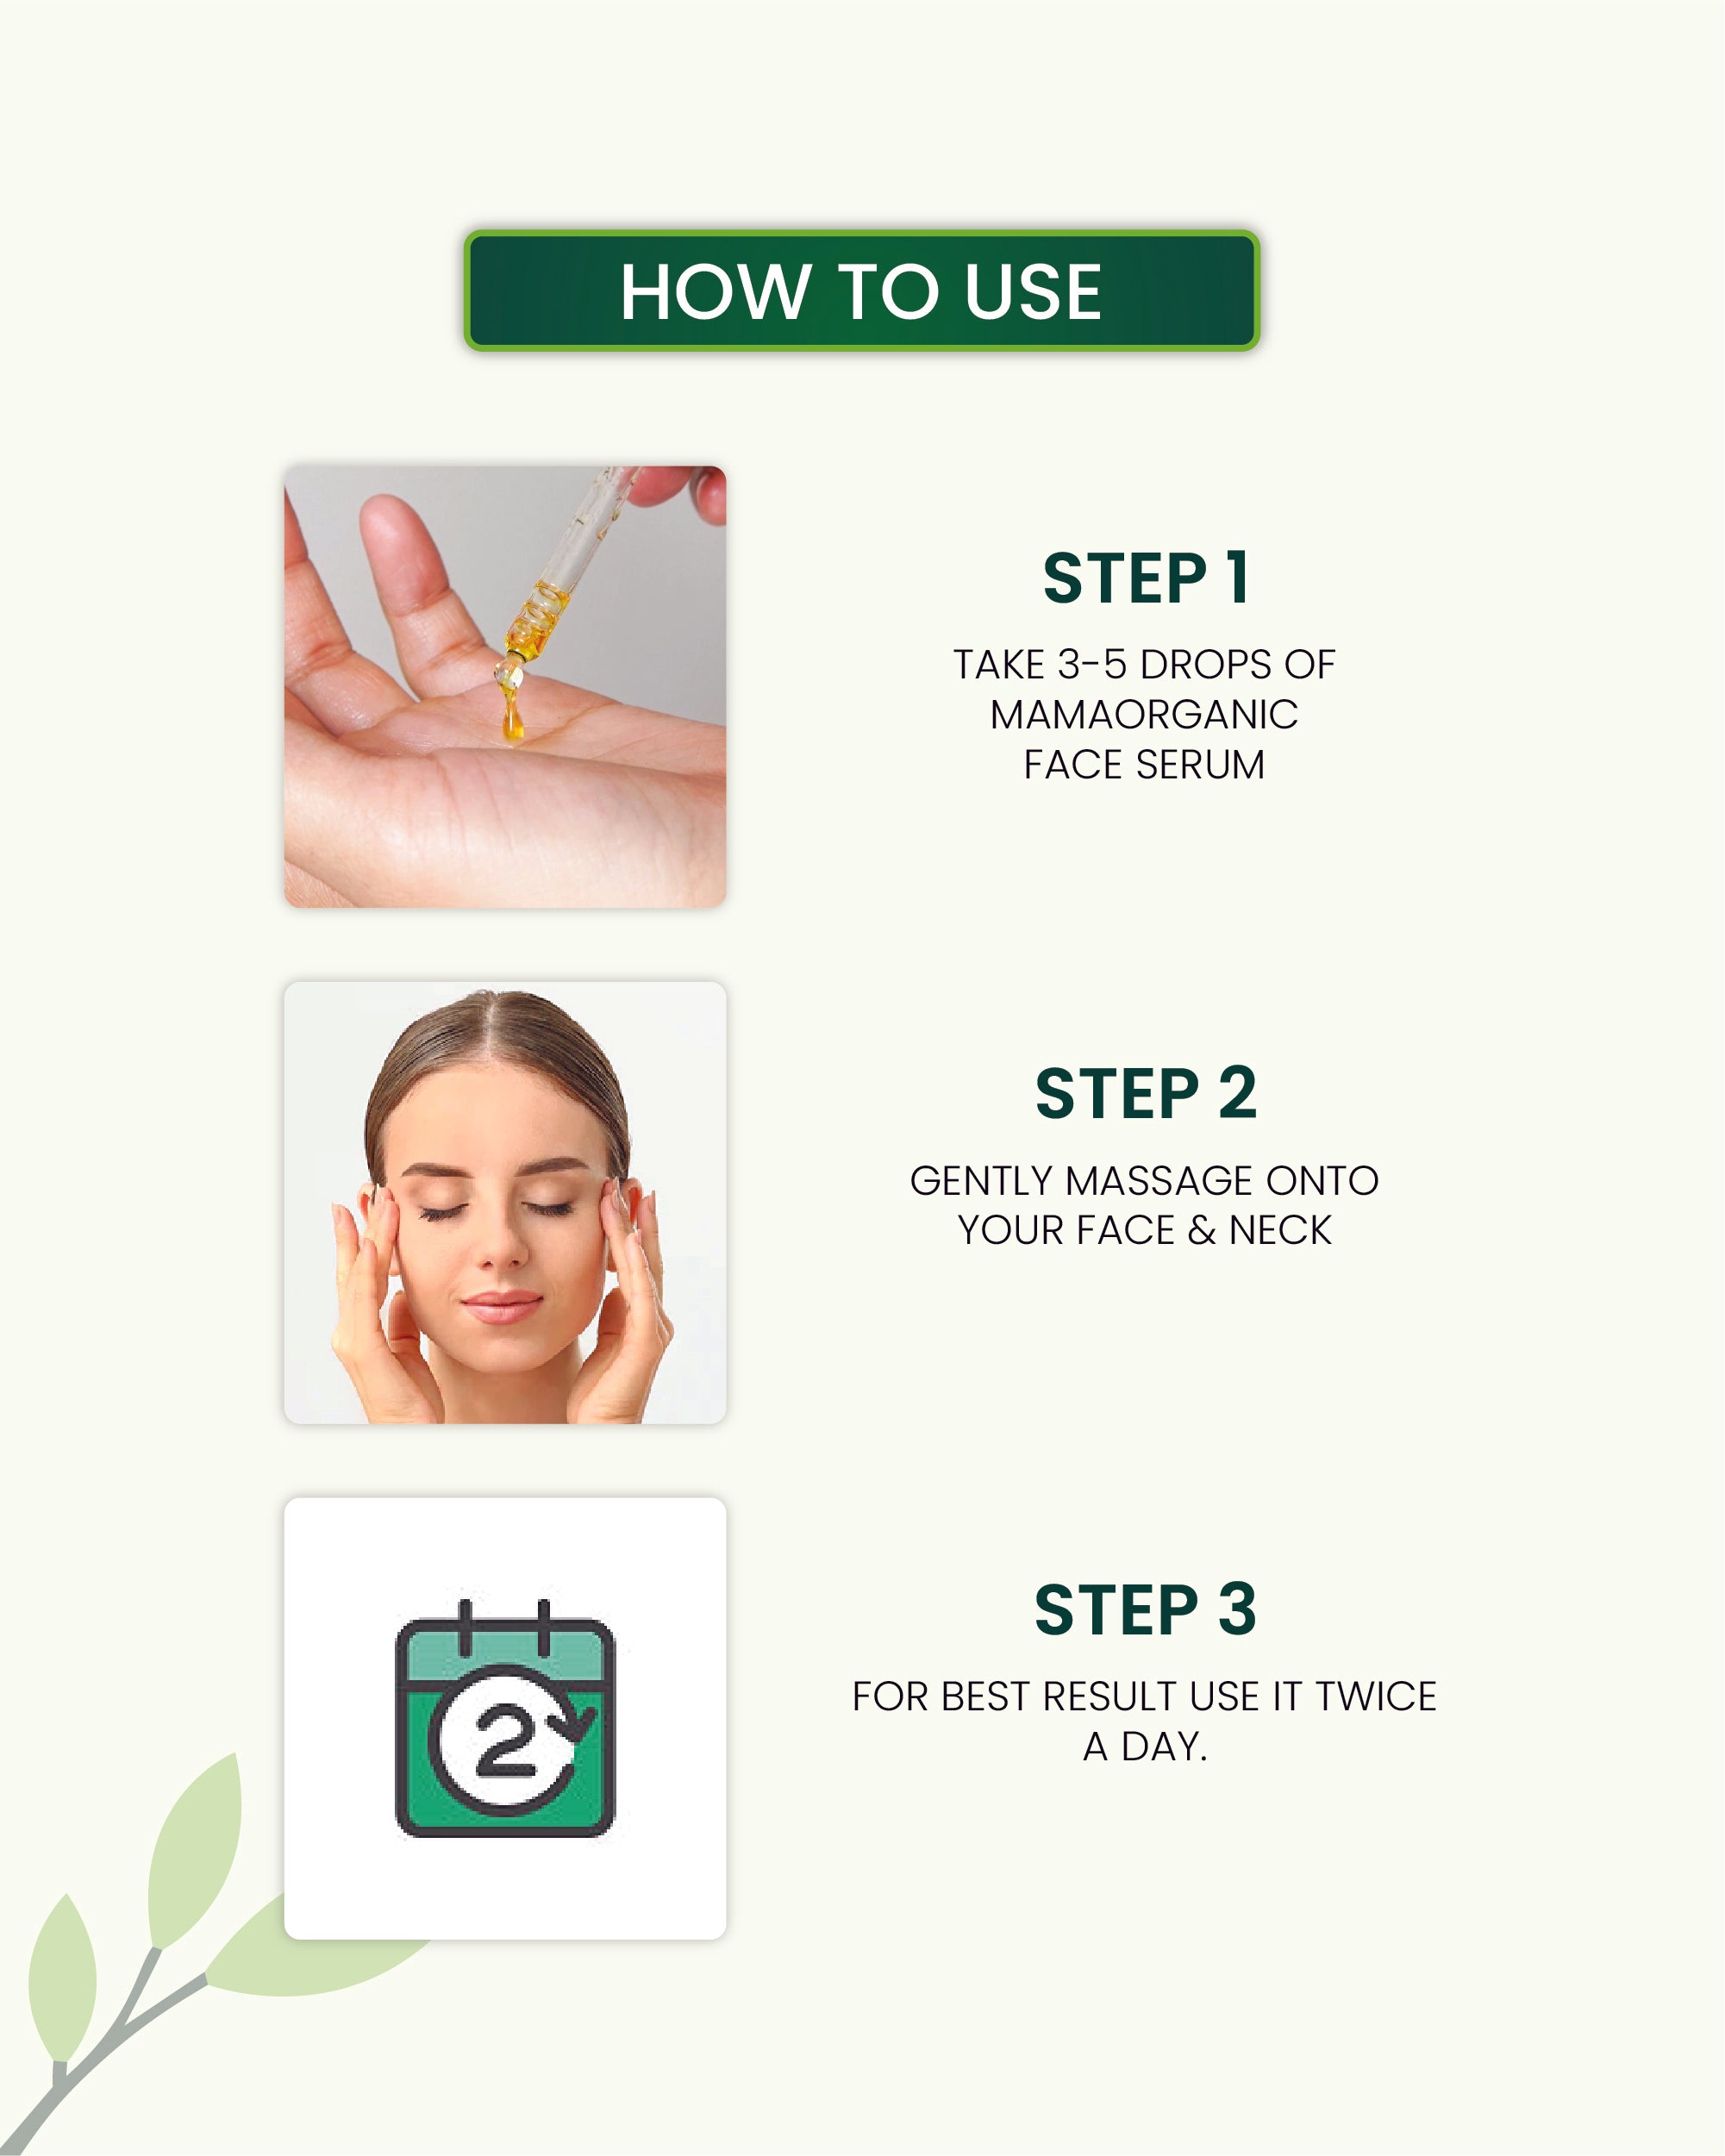 How to Use Retinol Face Serum